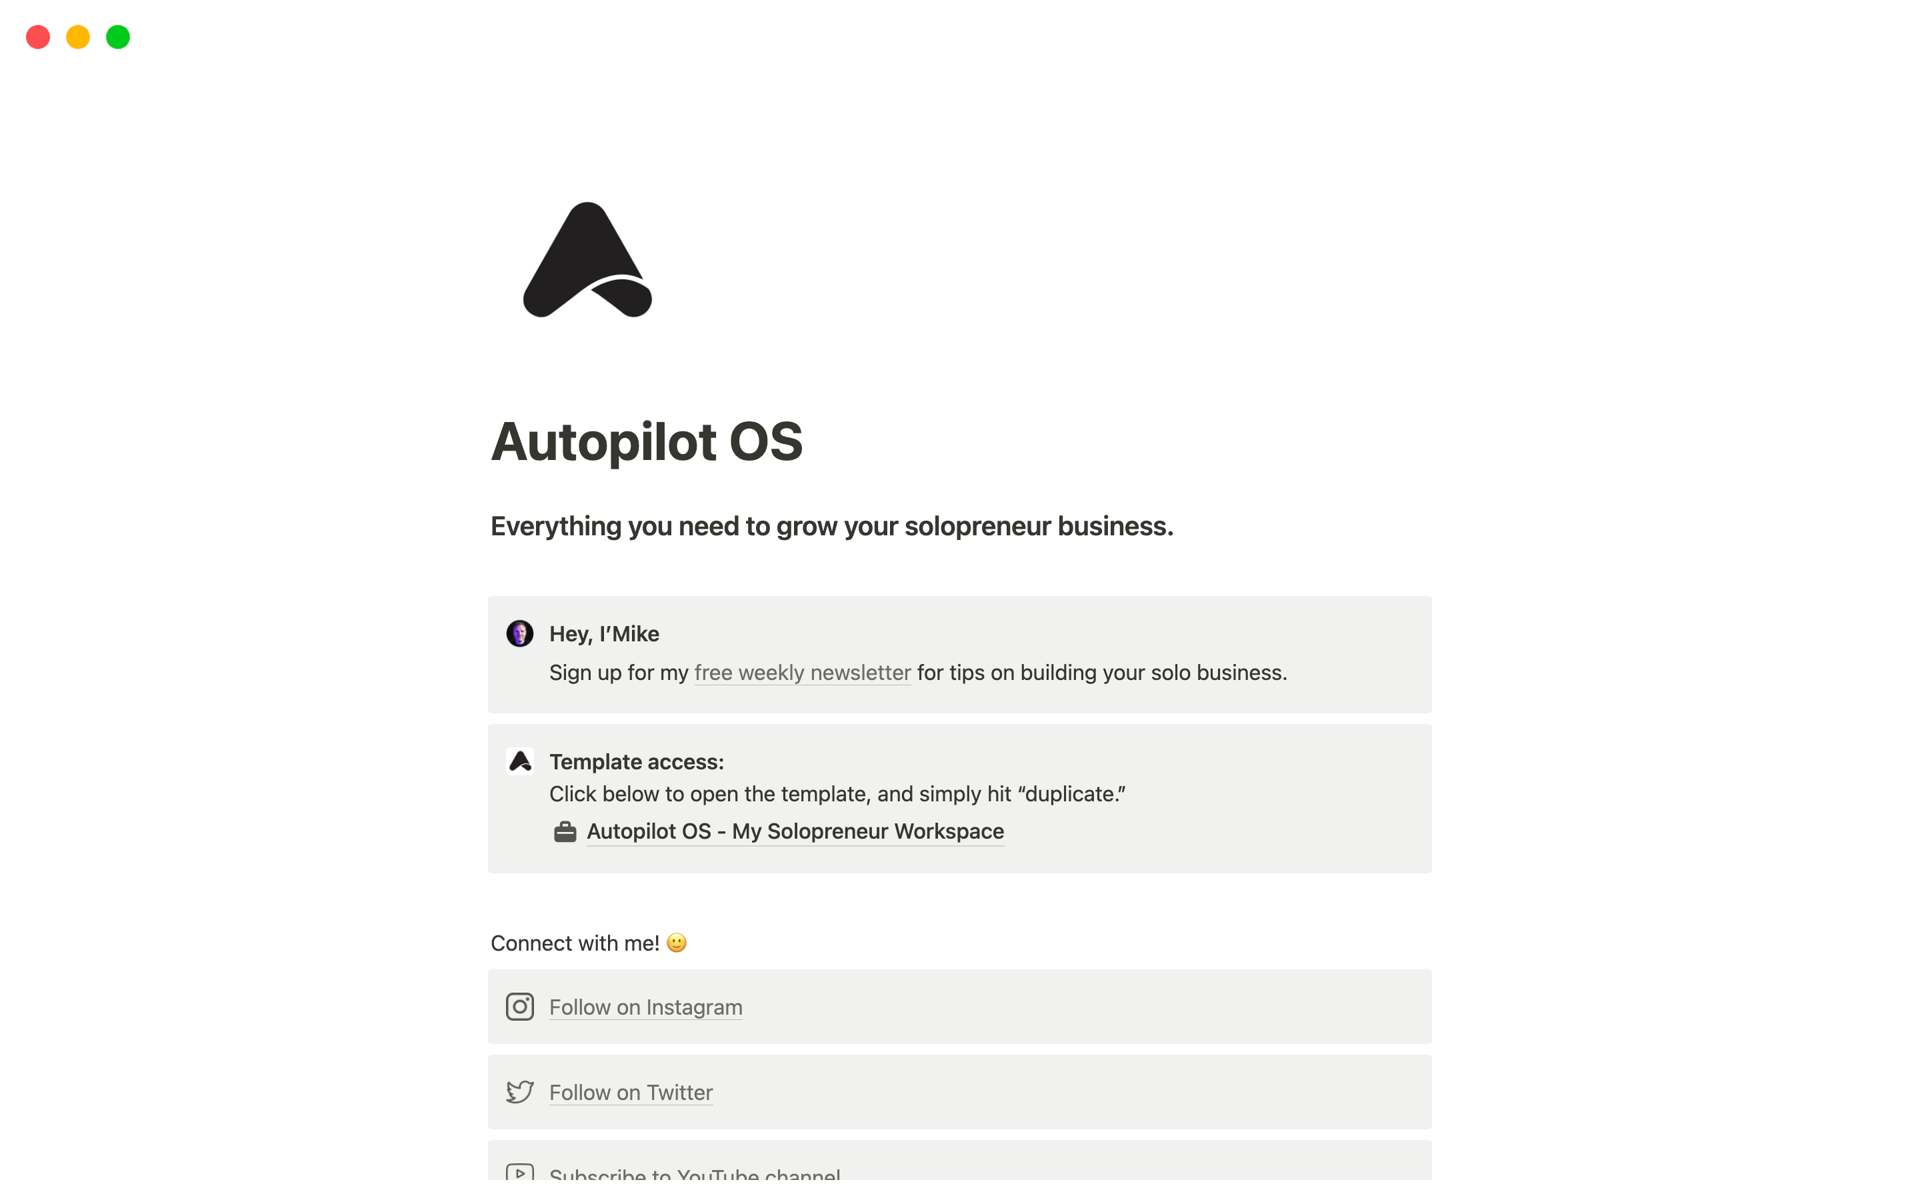 Vista previa de una plantilla para Autopilot OS